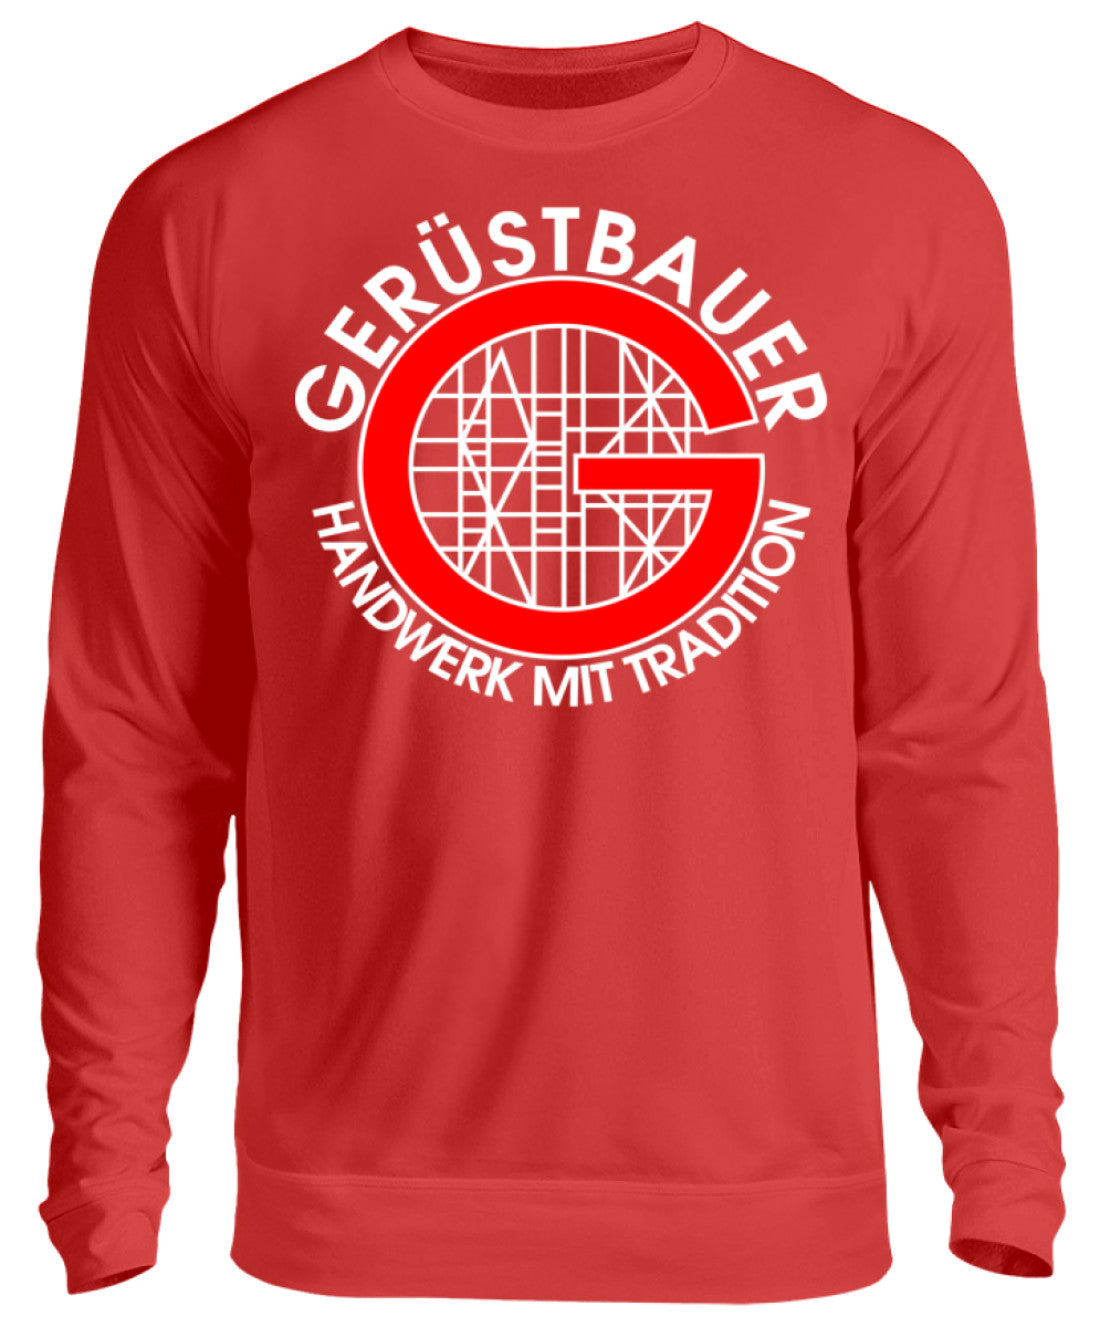 Gerüstbauer / Handwerk mit Tradition  - Unisex Pullover €29.95 Gerüstbauer - Shop >>